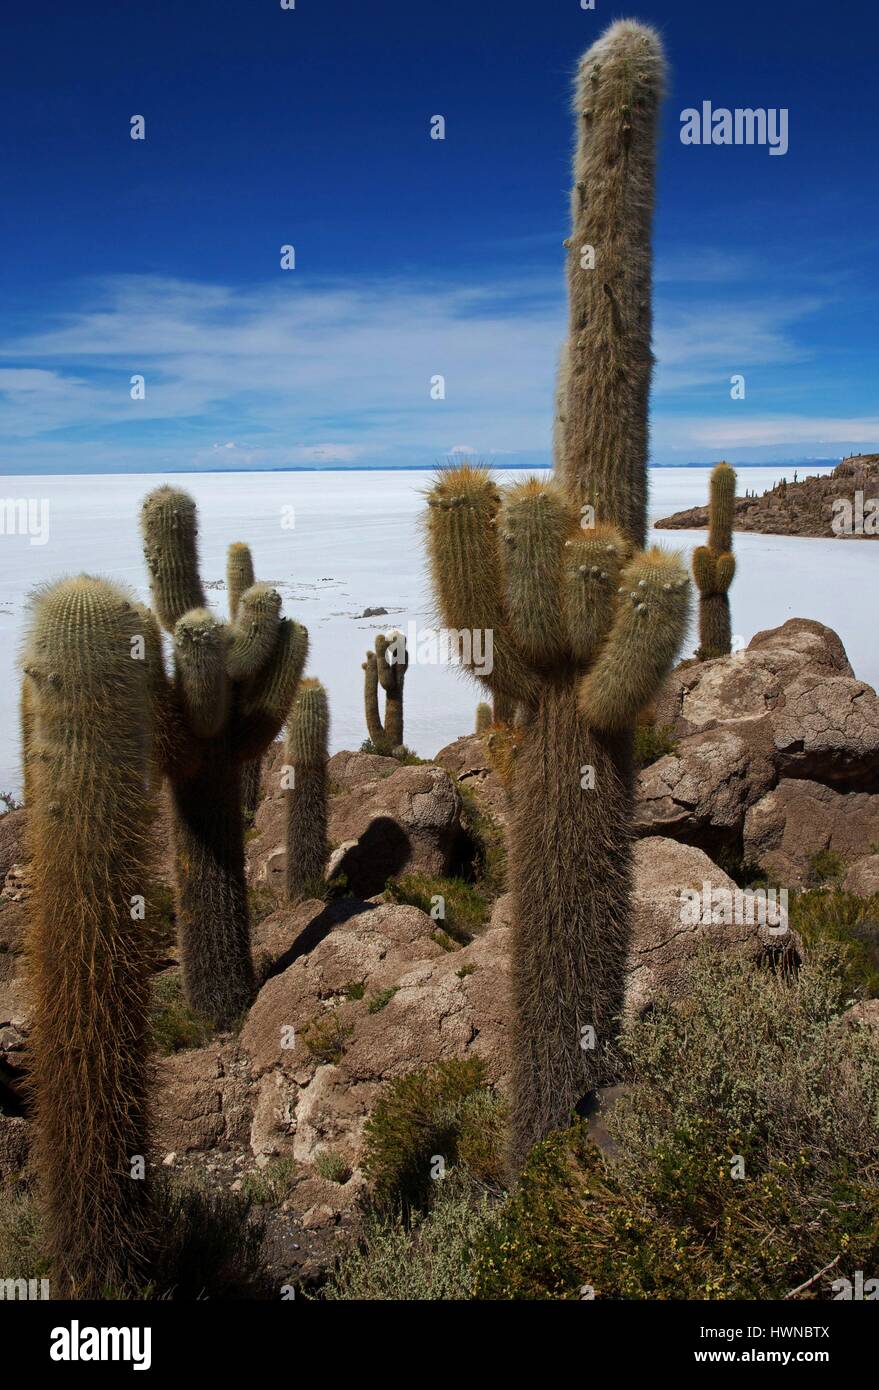 Bolivia, dipartimento di Potosi, Salar de Uyuni, collina di Incahuasi irto di cactus giganti, nella parte anteriore del Salar de Uyuni, il più grande lago salato nel mondo Foto Stock